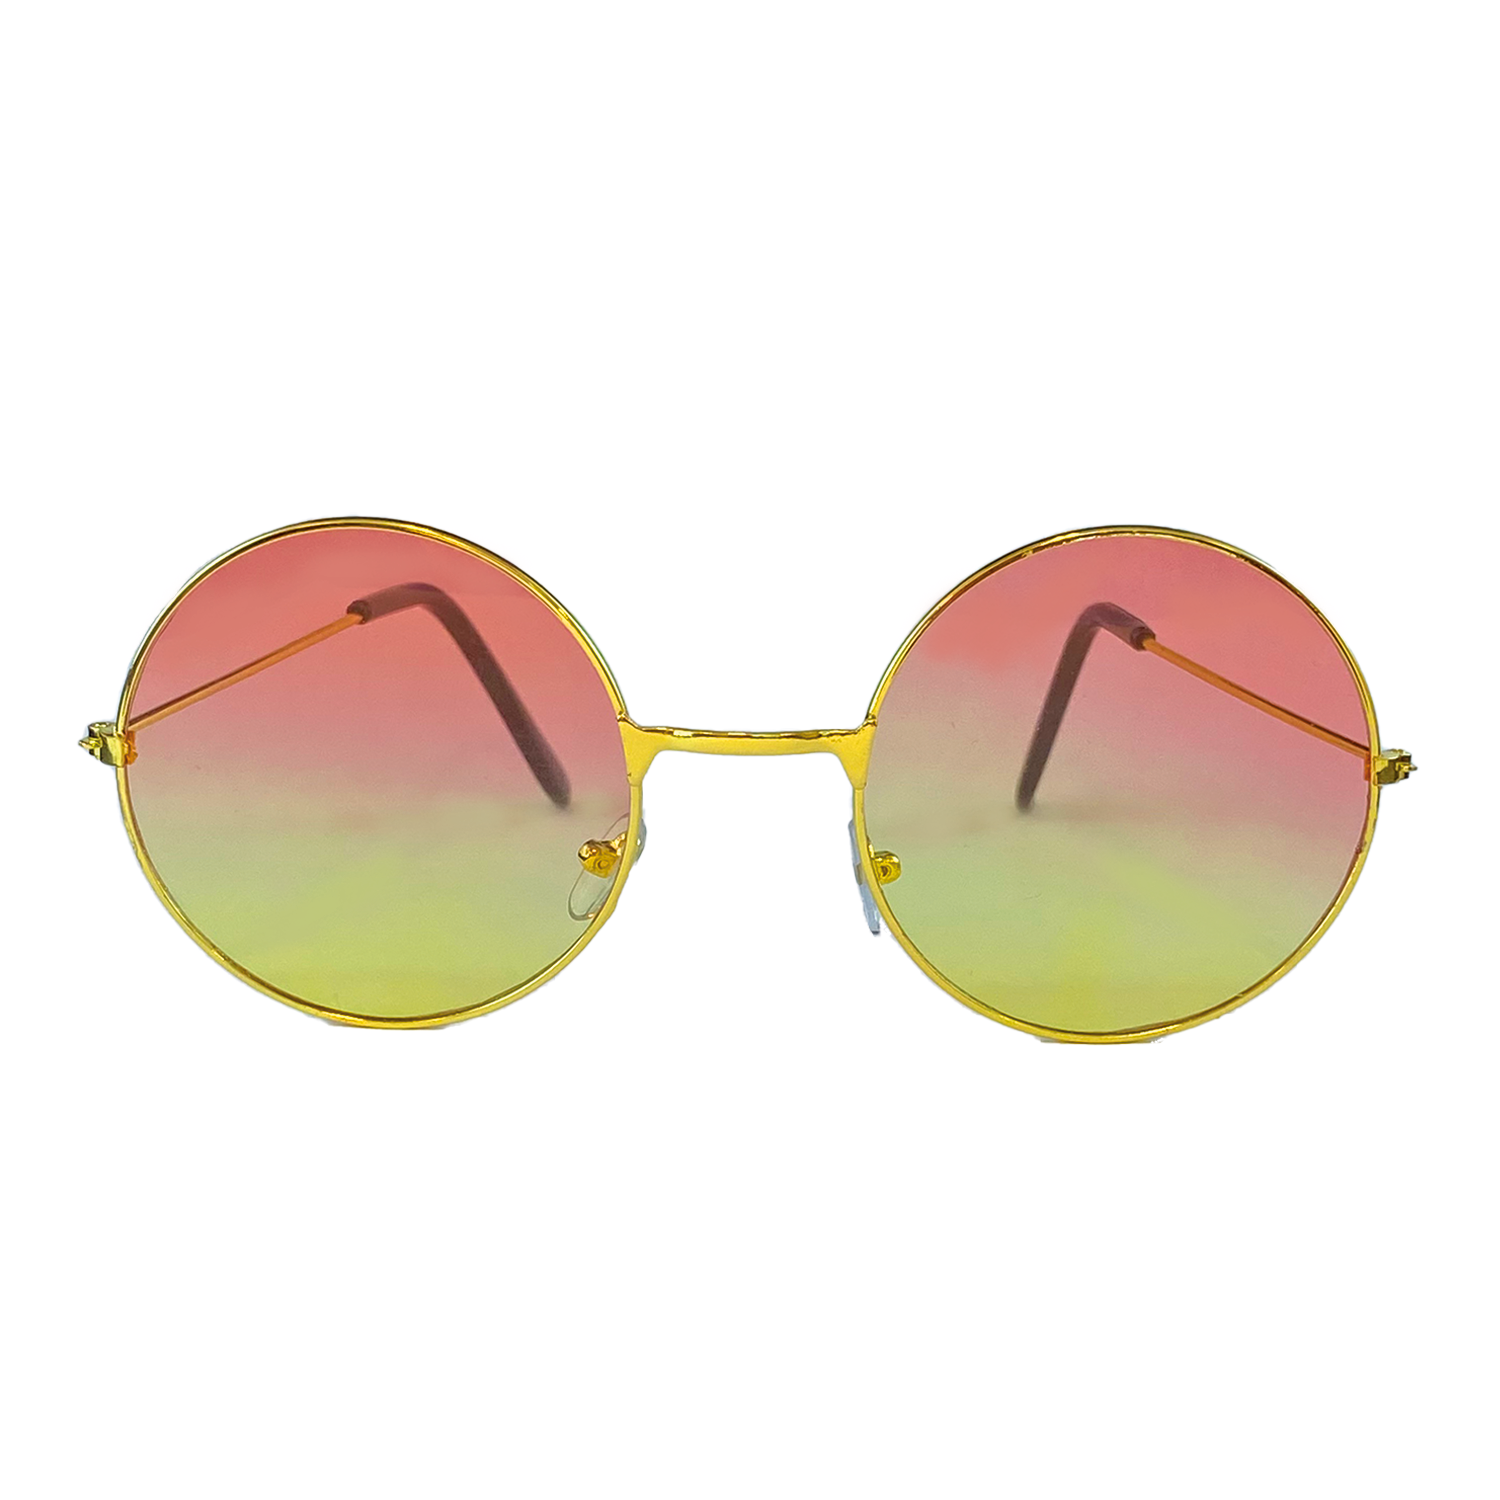 Hippie zonnebril - Oeteldonk kopen